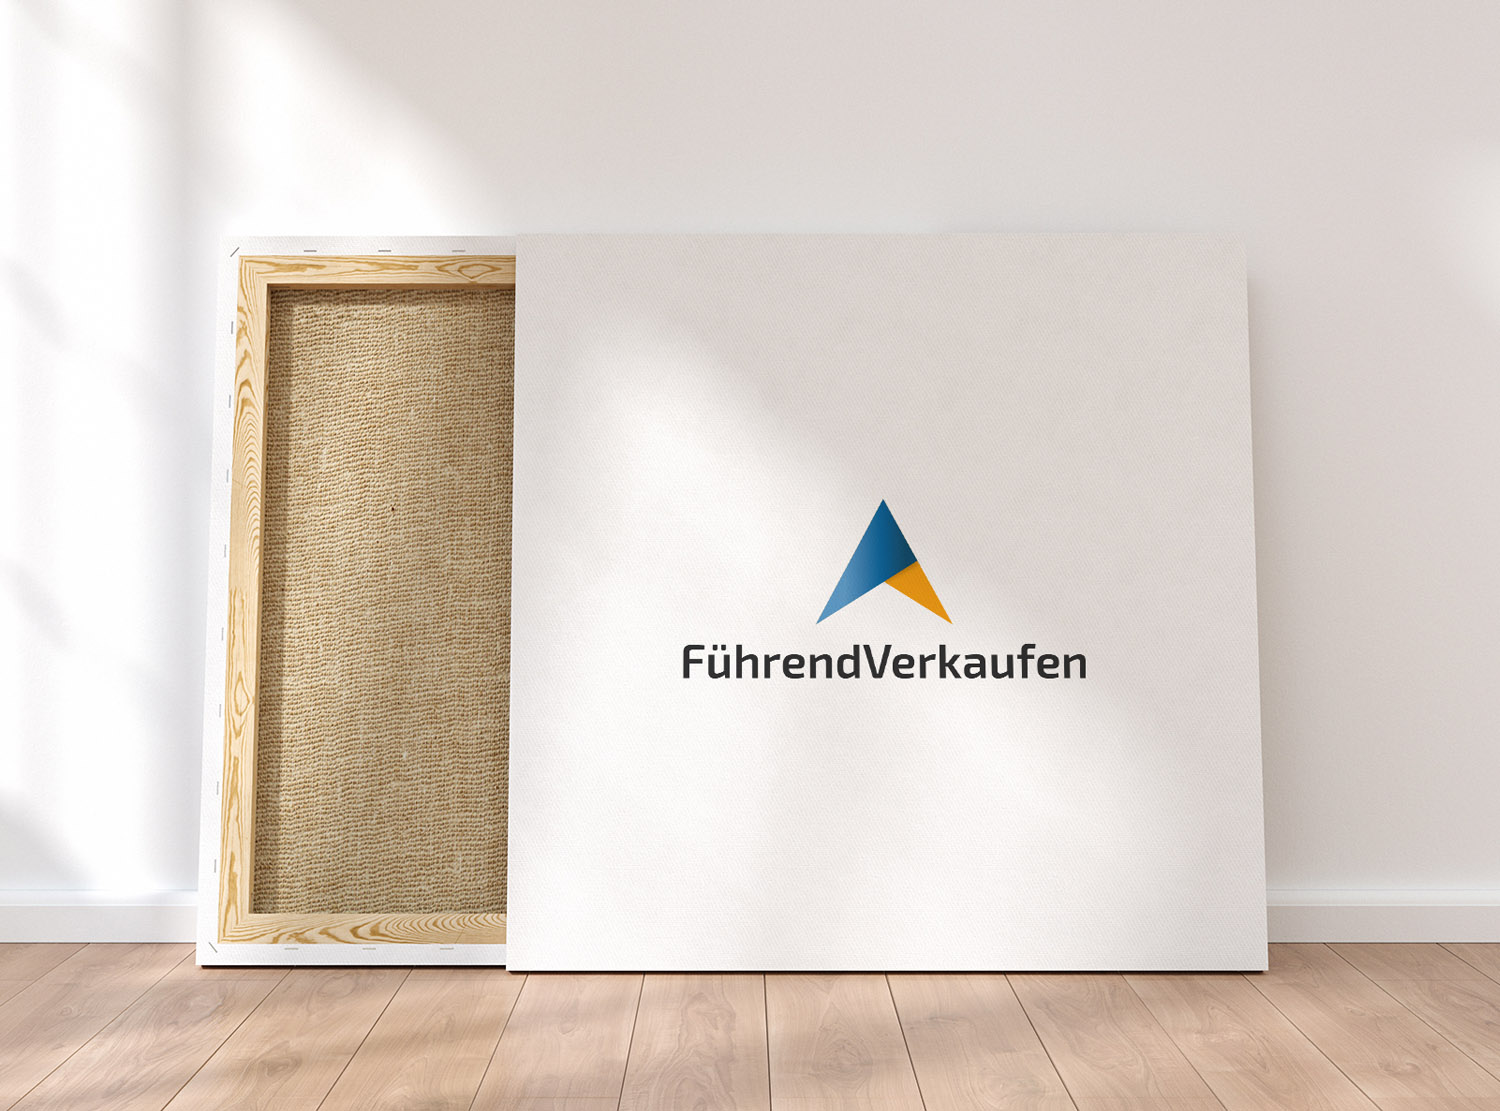 Logodesign für die Firma FührendVerkaufen by LEWEB